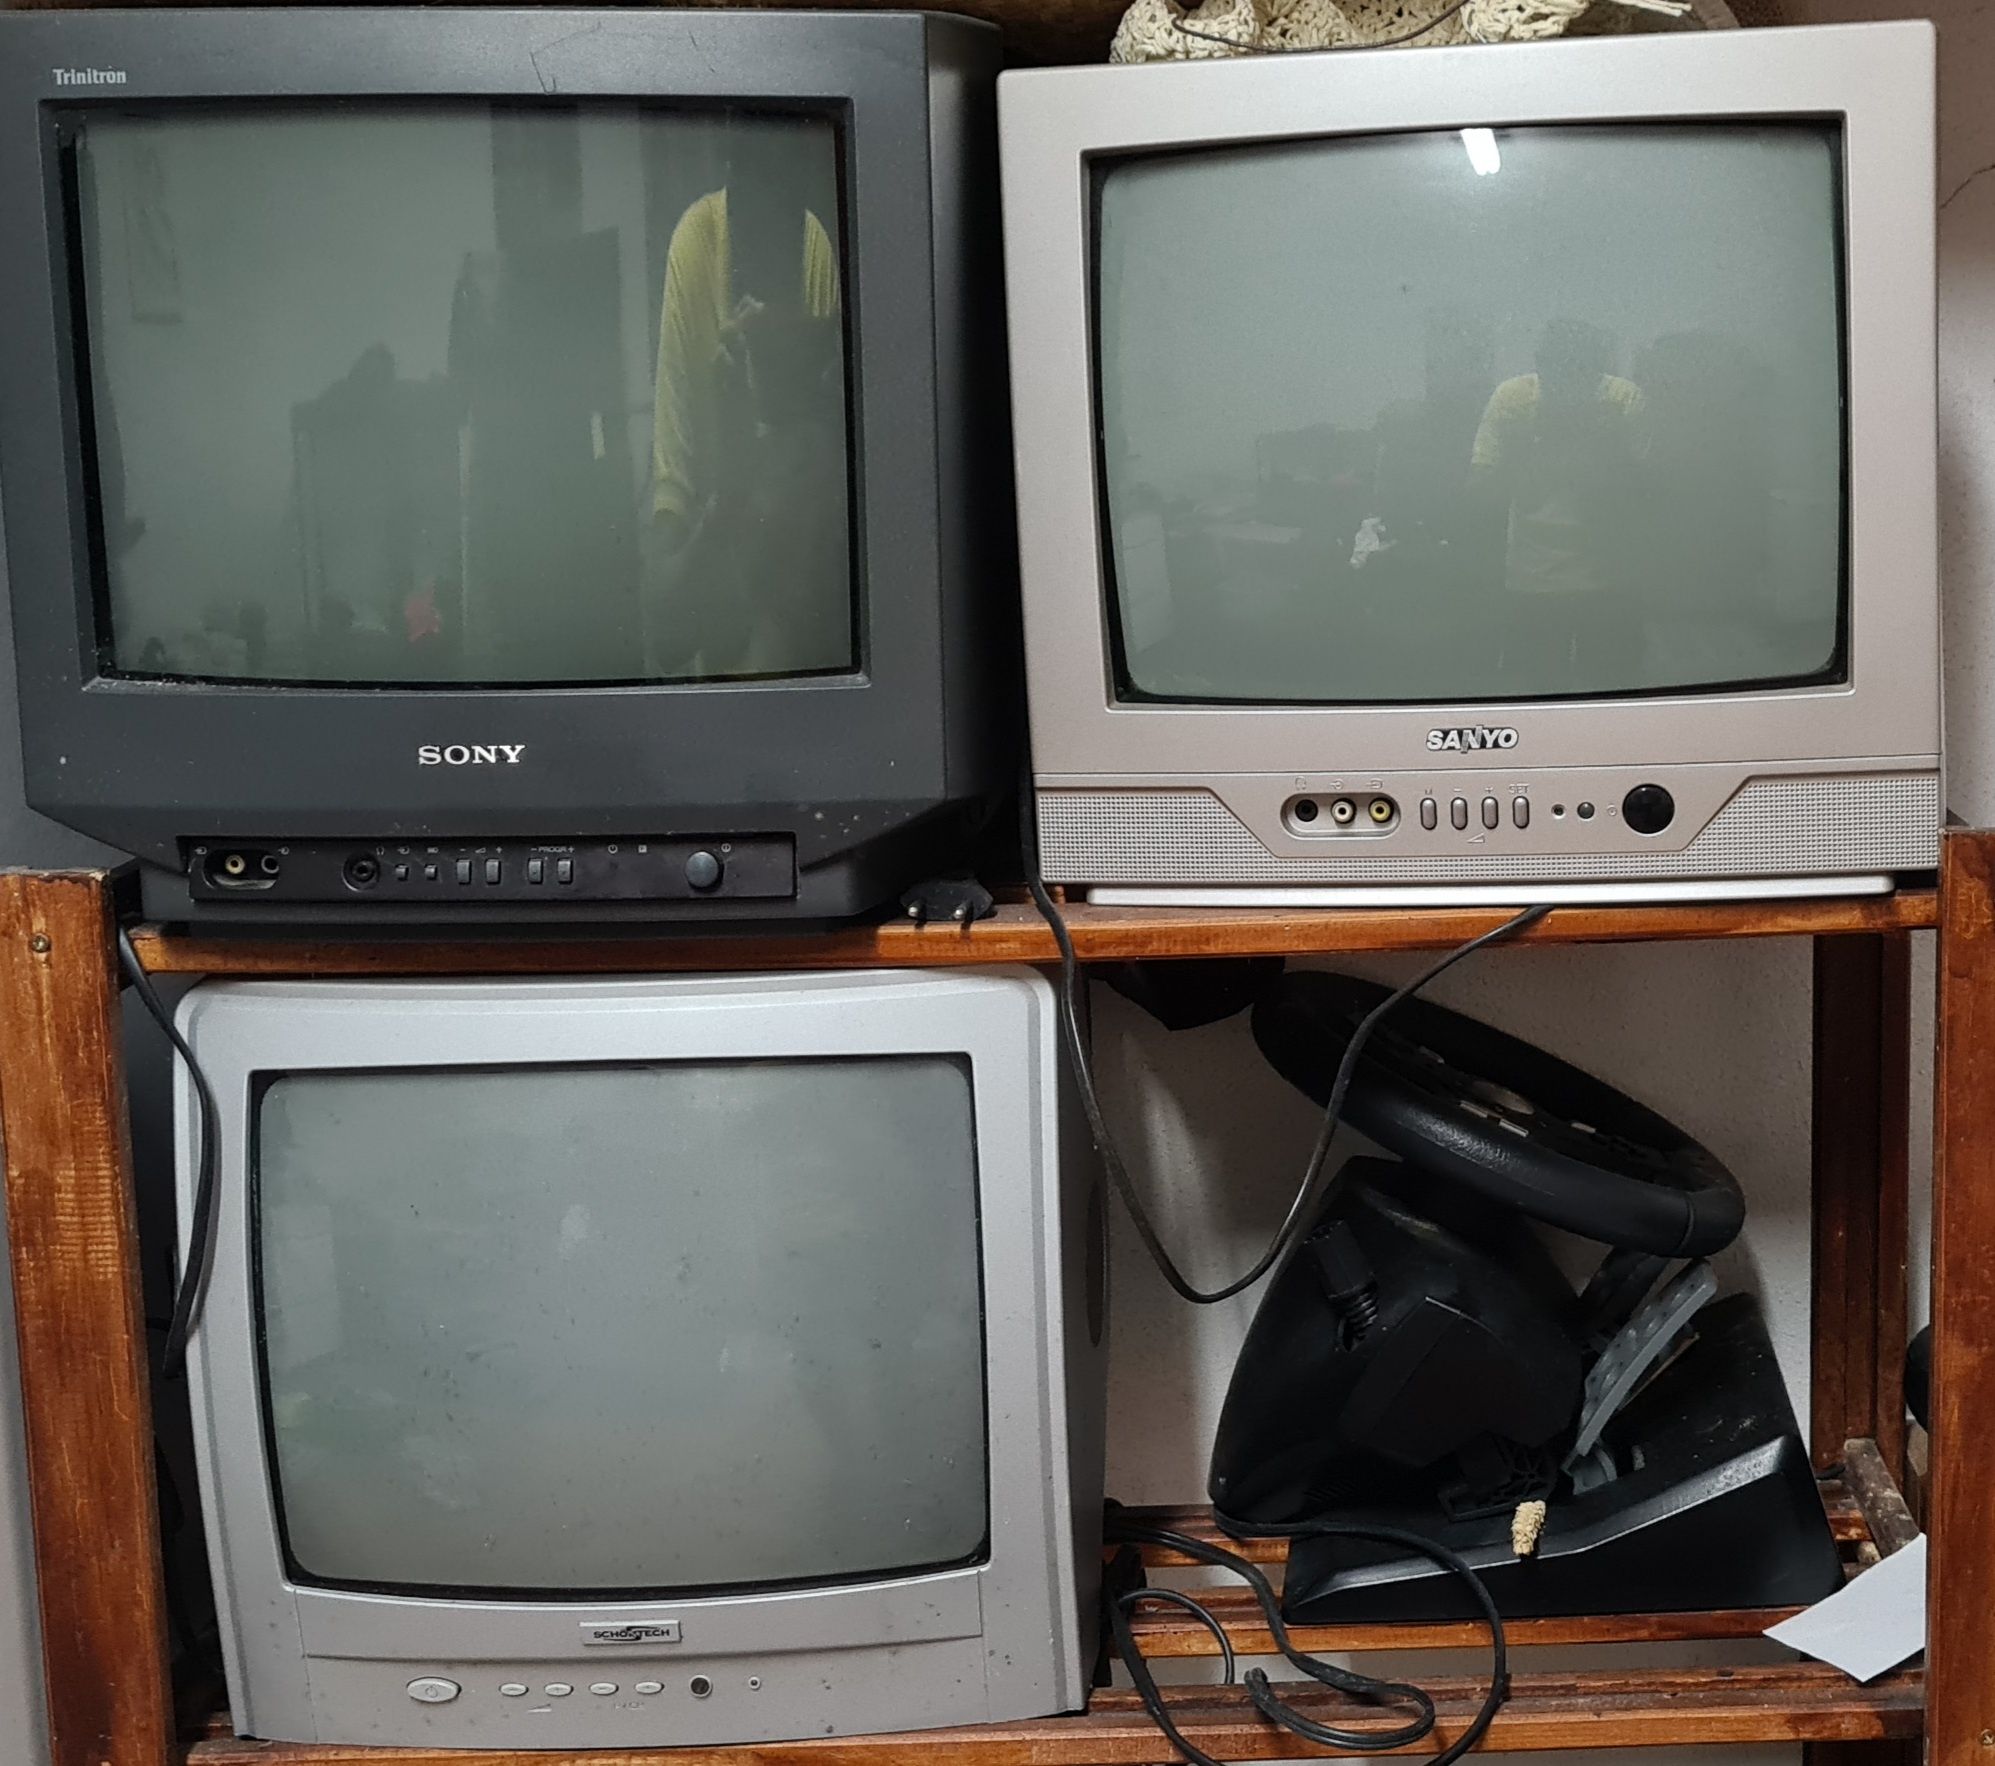 Televisões  antigas